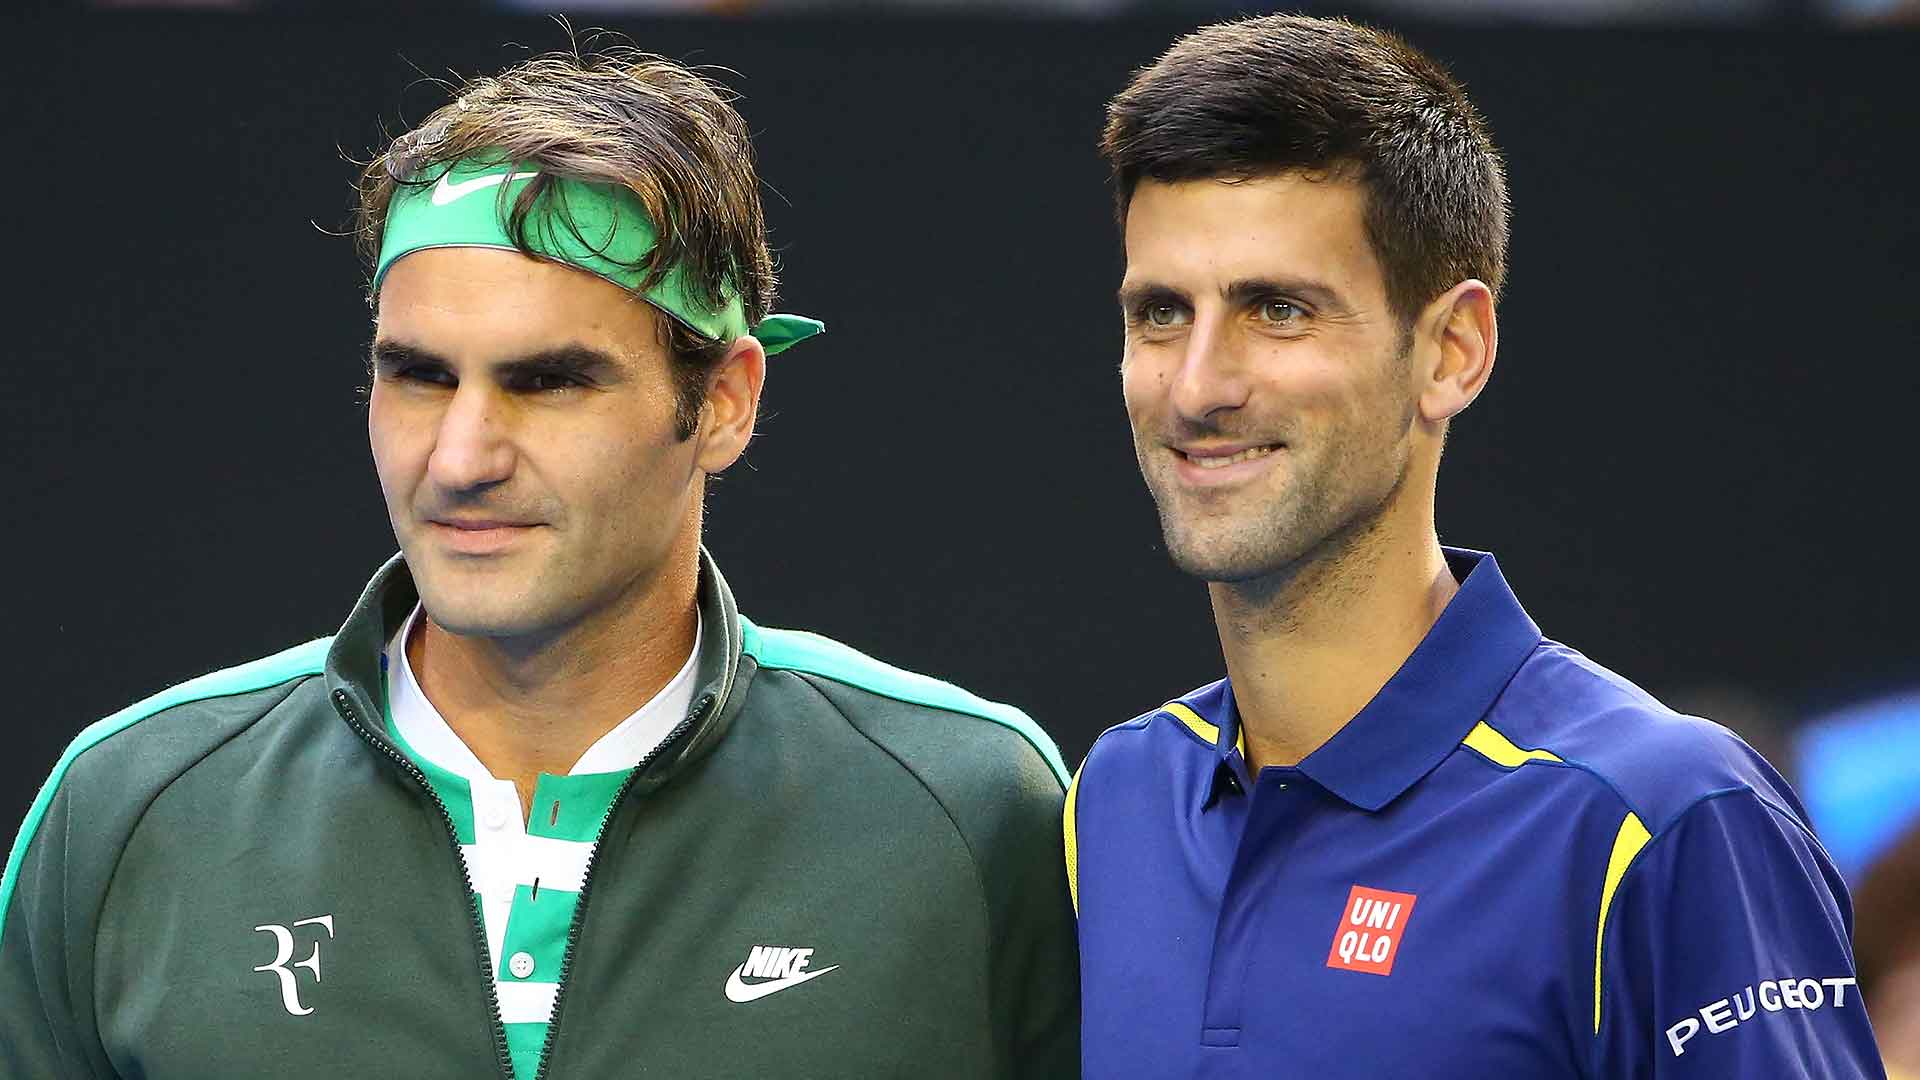 Roger Federer and Novak Djokovic, 2016 Australian Open